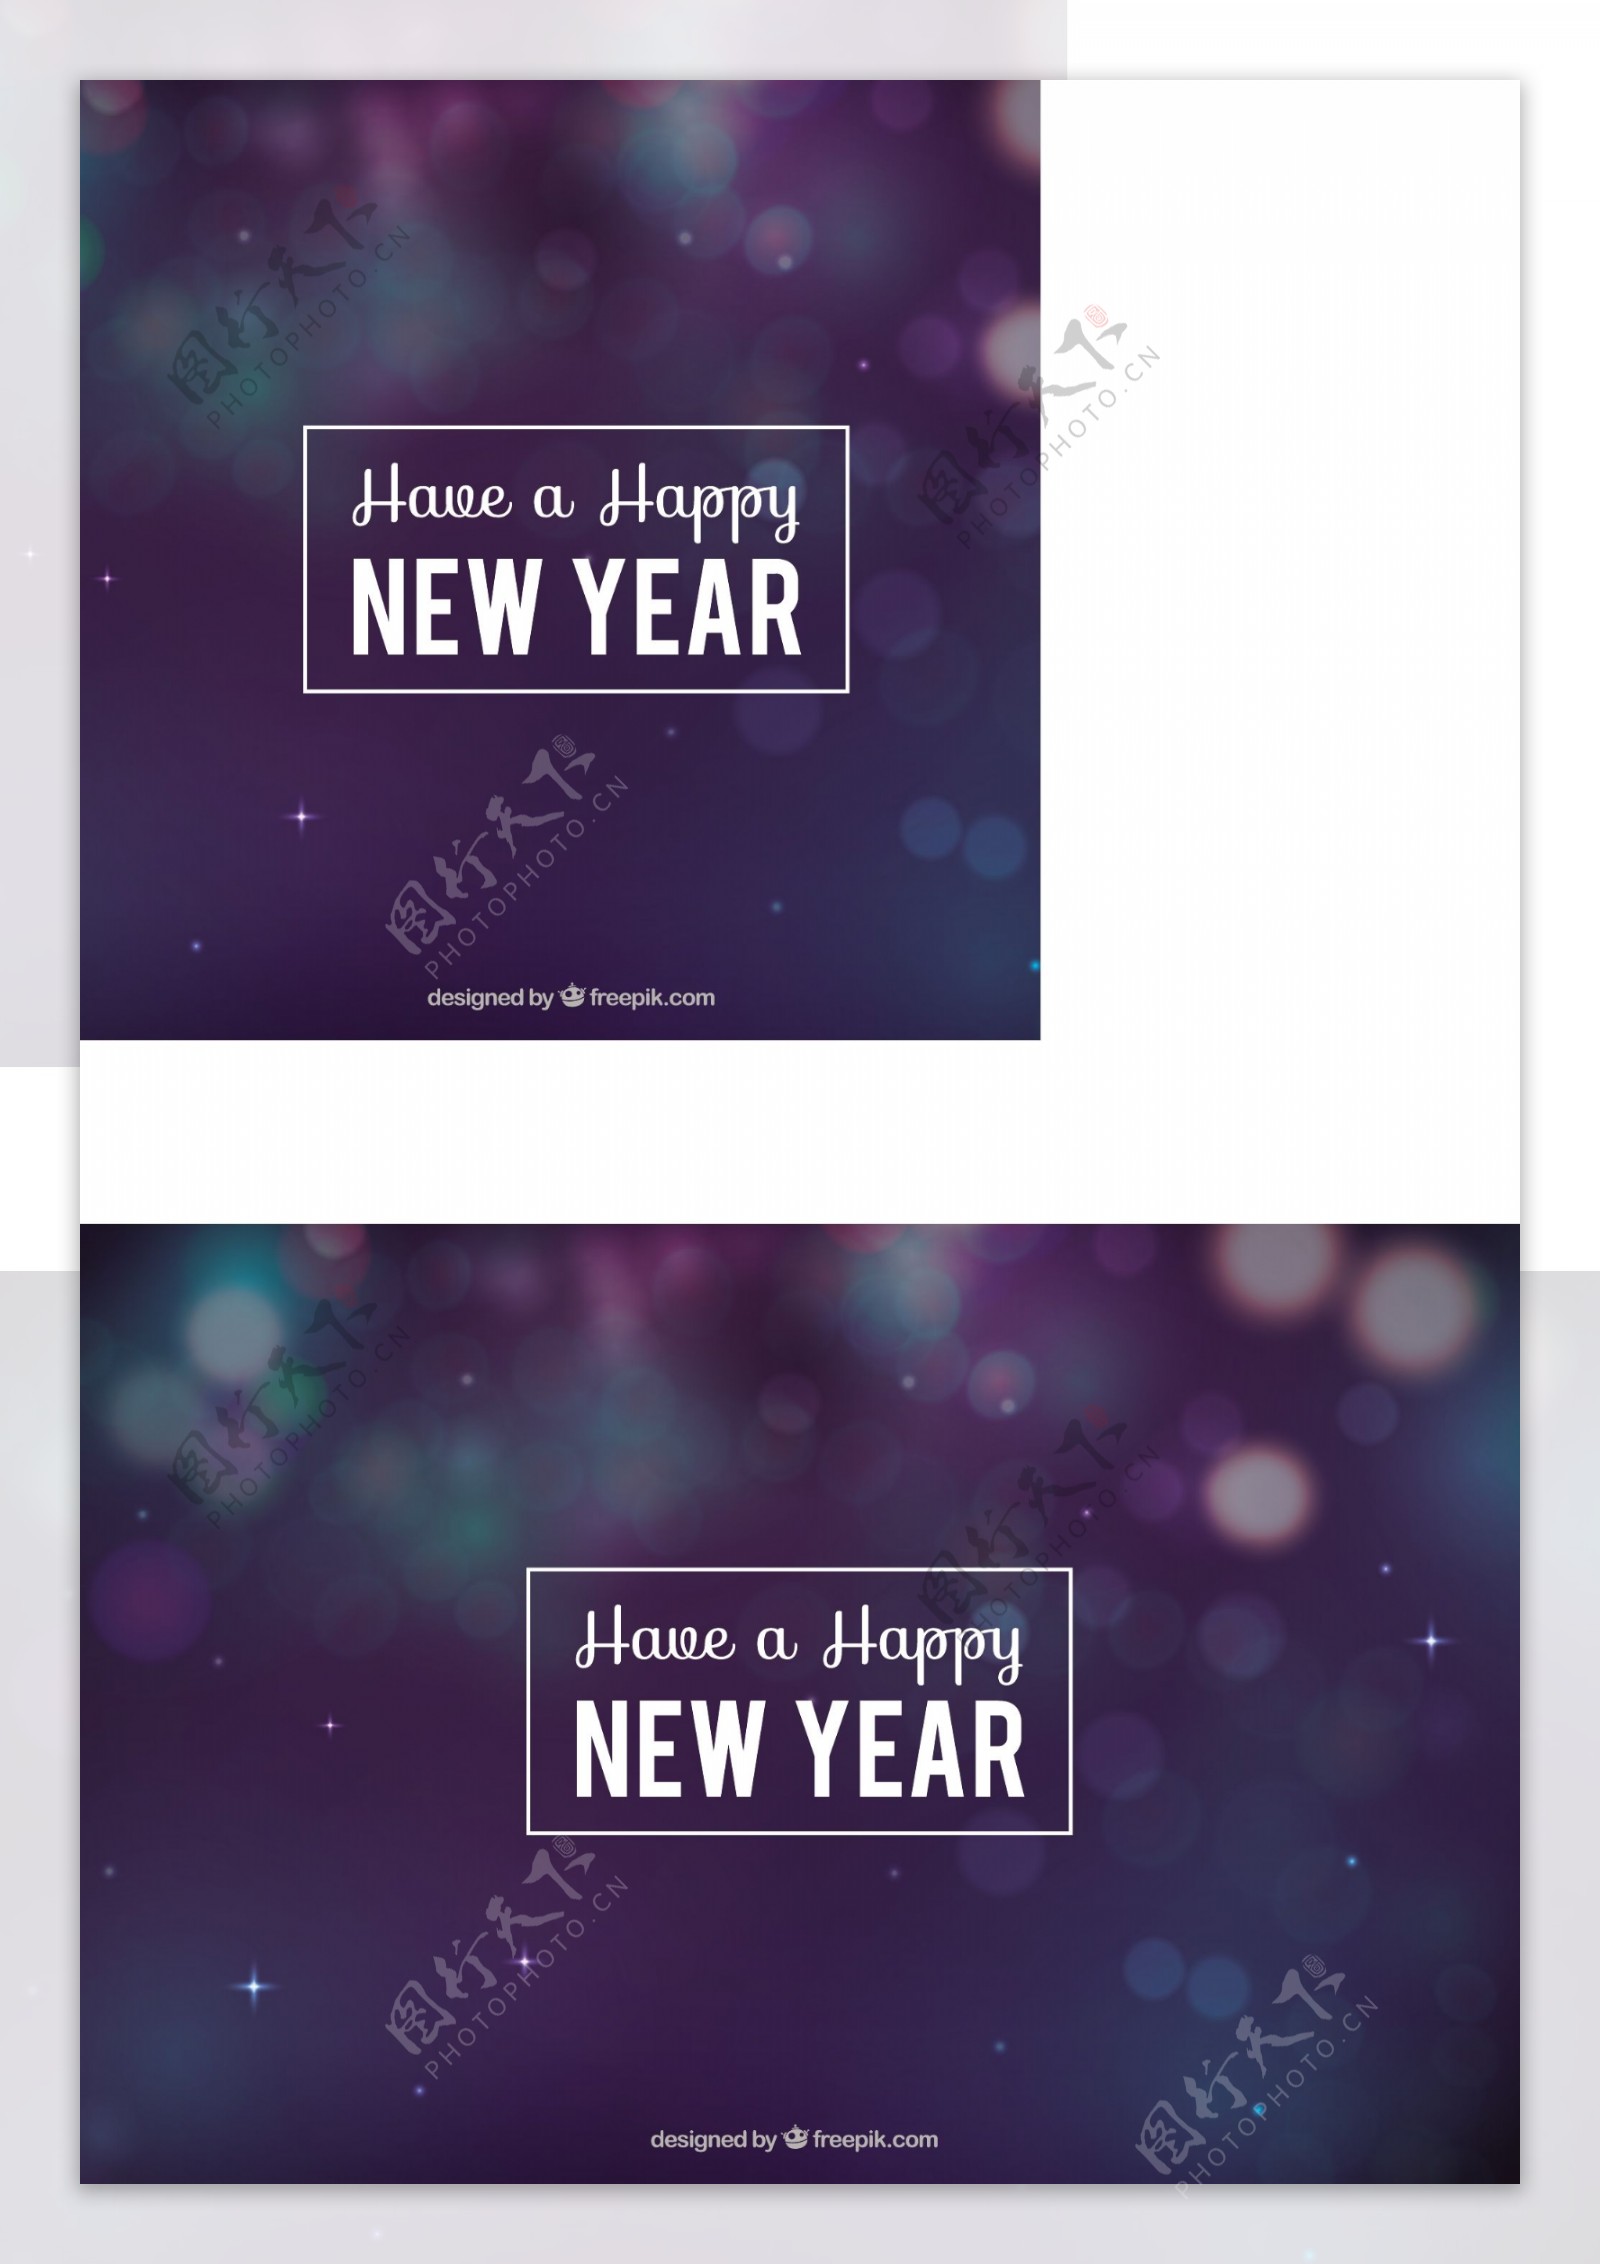 在蓝色和紫色色调的背景虚化的新年背景